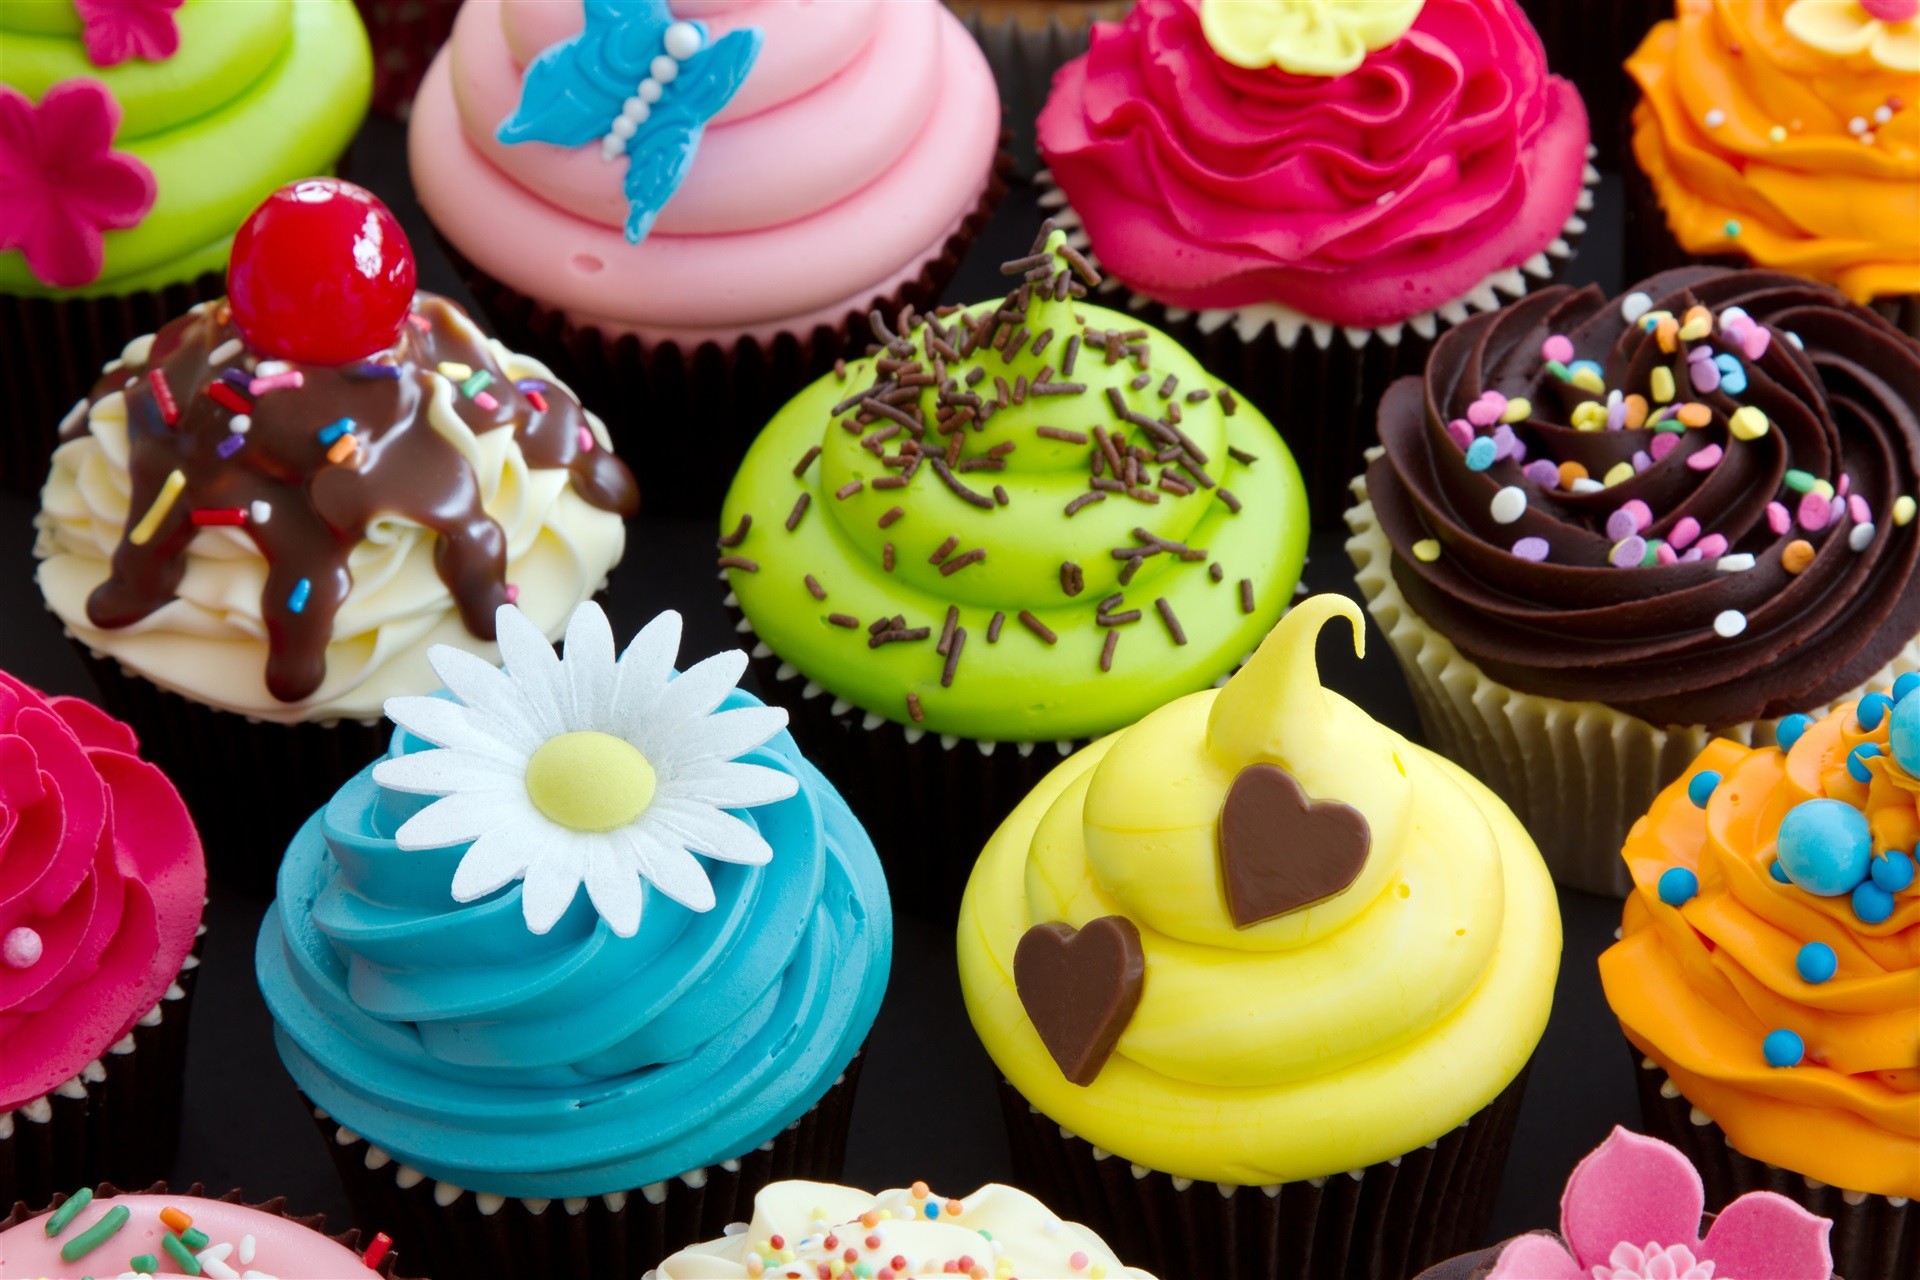 CakeParty - Torta Artigianale, Toppers Artigianale, Stampa Alimentare Artigianale, Muffins Artigianali, Biscotti Artigianali, Torta Personalizzata, Toppers Personalizzato